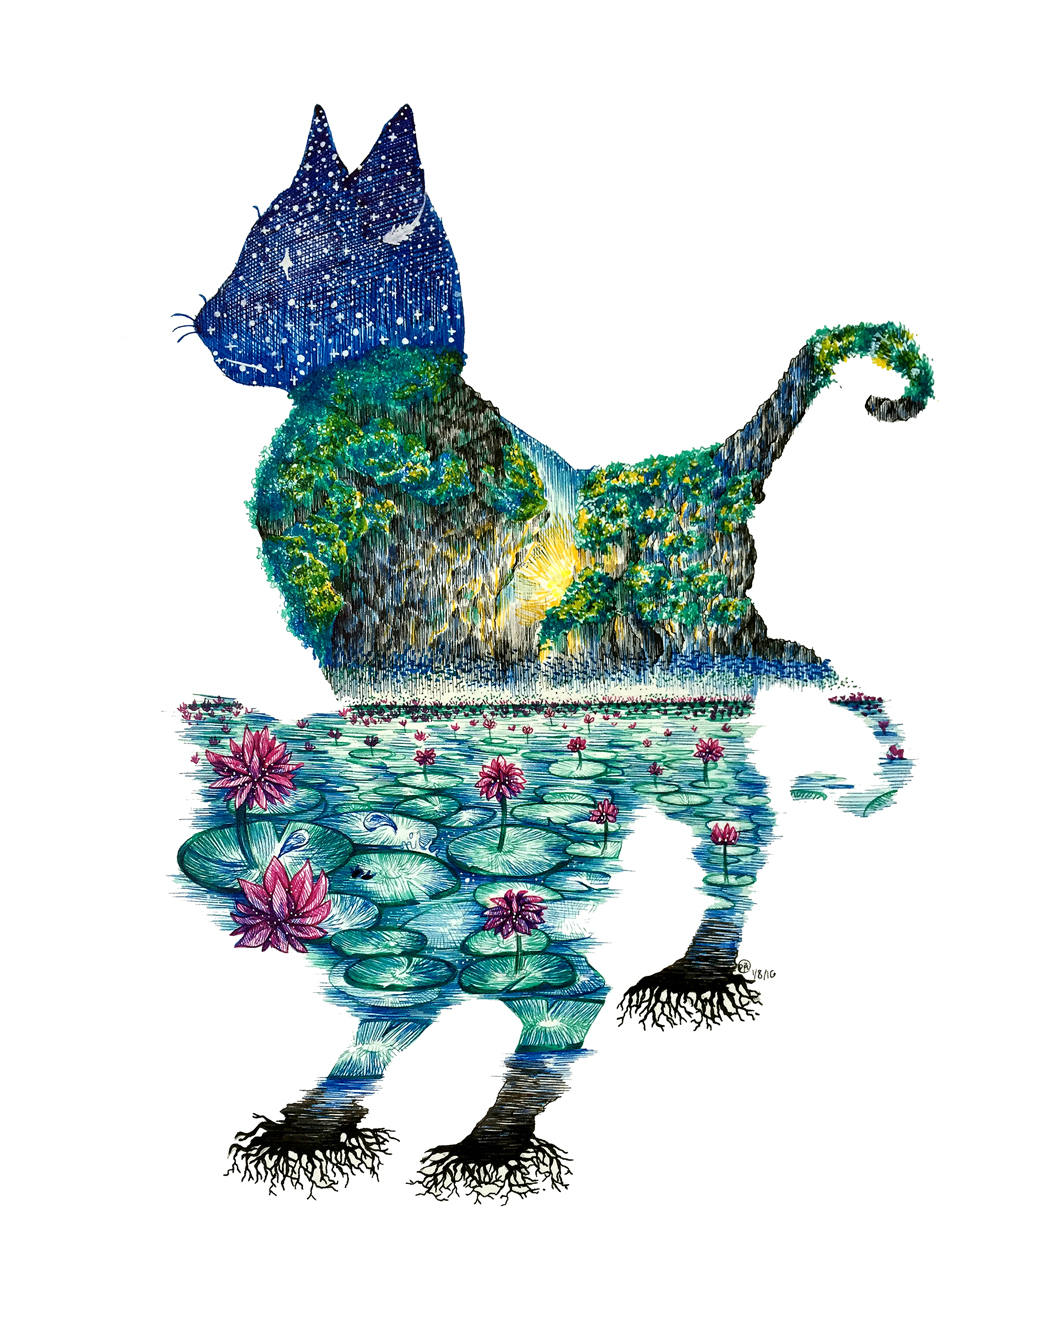 Native Cat series: Thailand – Siamese cat illustration